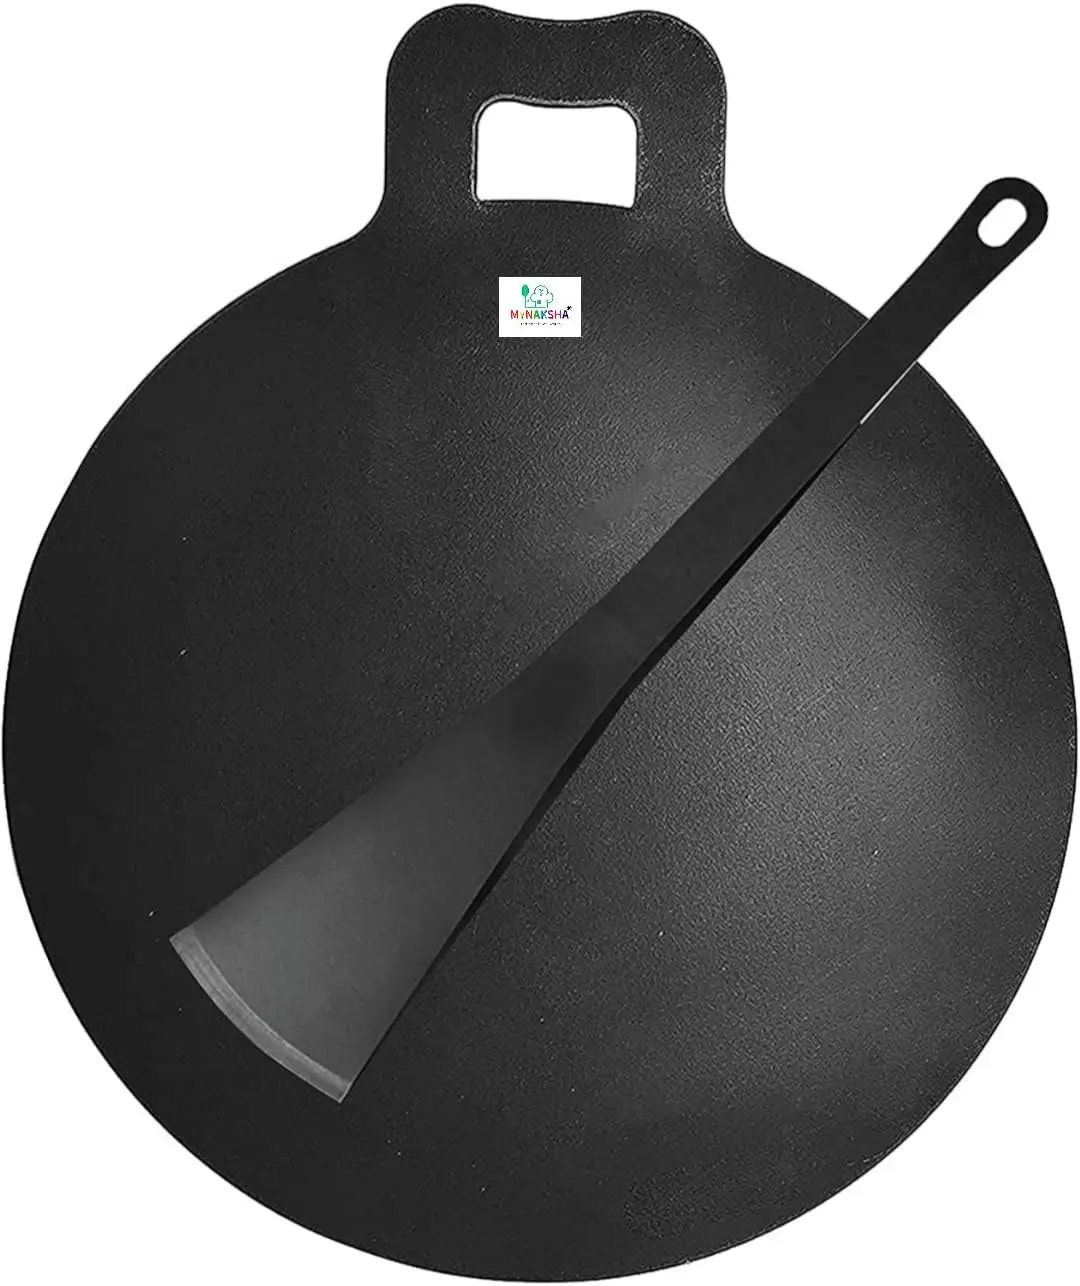 

Dosa Tawa Iron Dosa Kallu CookwareLarge Size Dosa Iron Tawa - 14 In with Handle Quality, Black